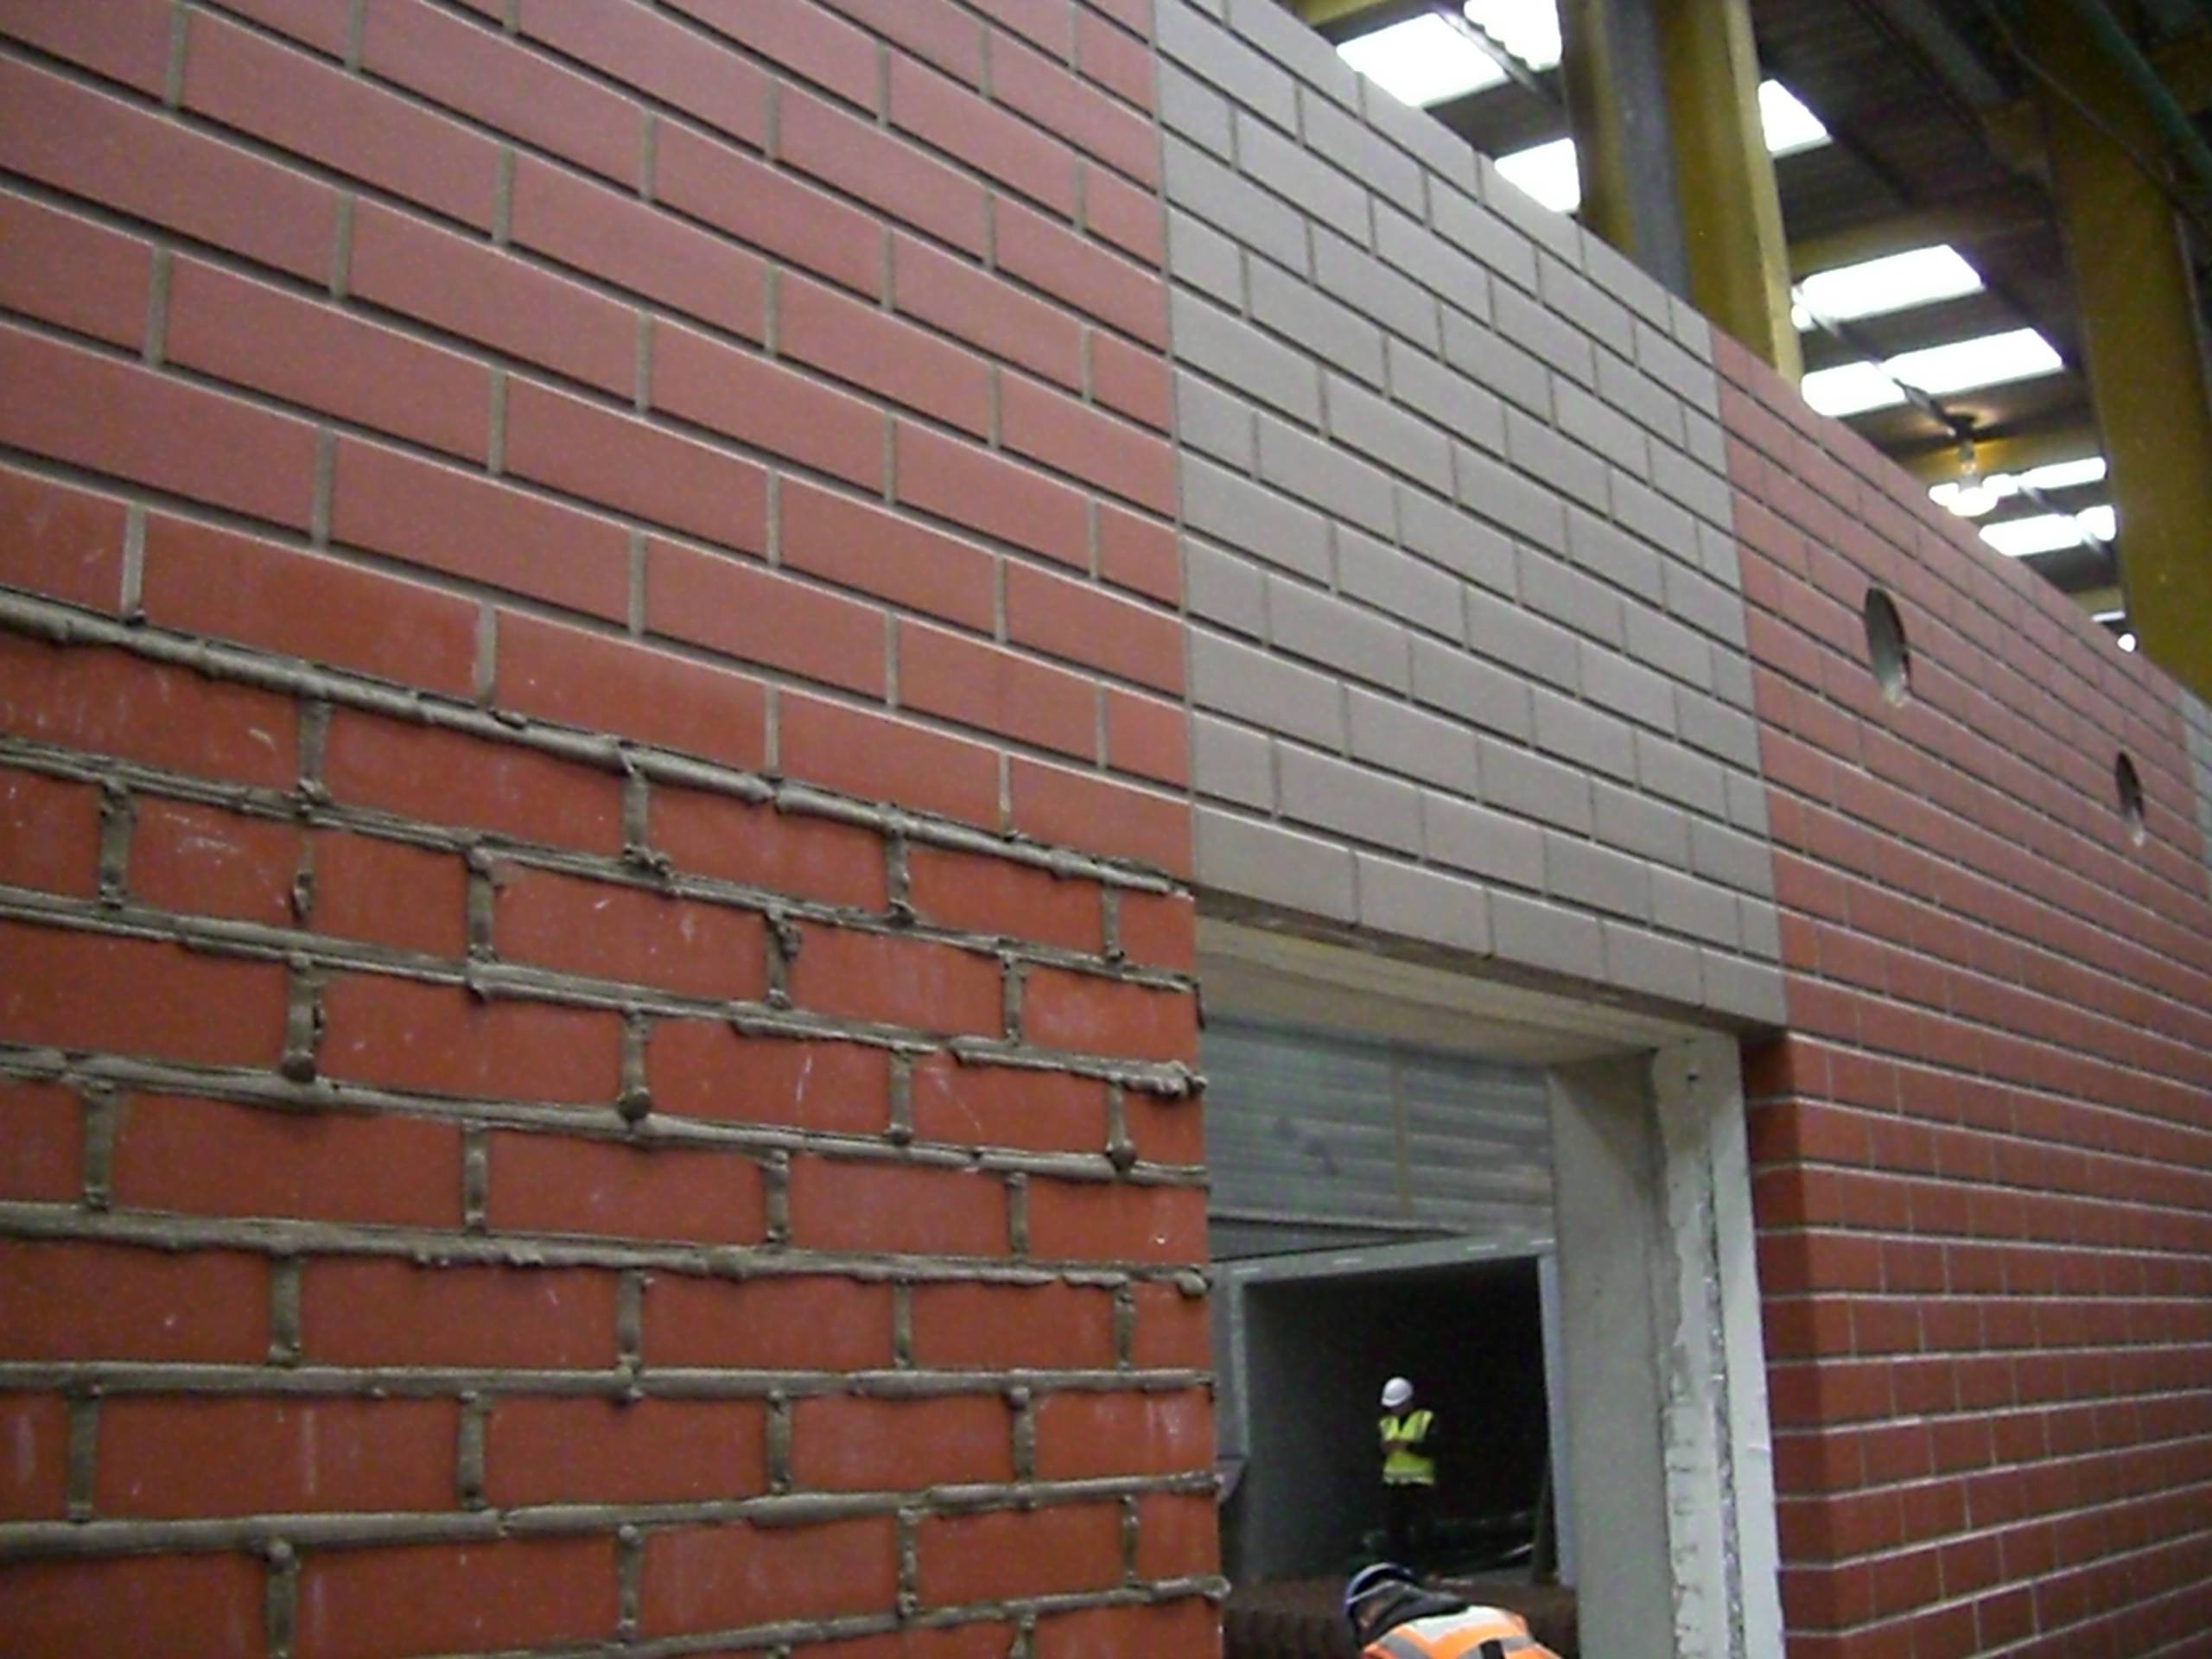  Pre Cast  Concrete  Panels  LBT Brick  Facades Ltd